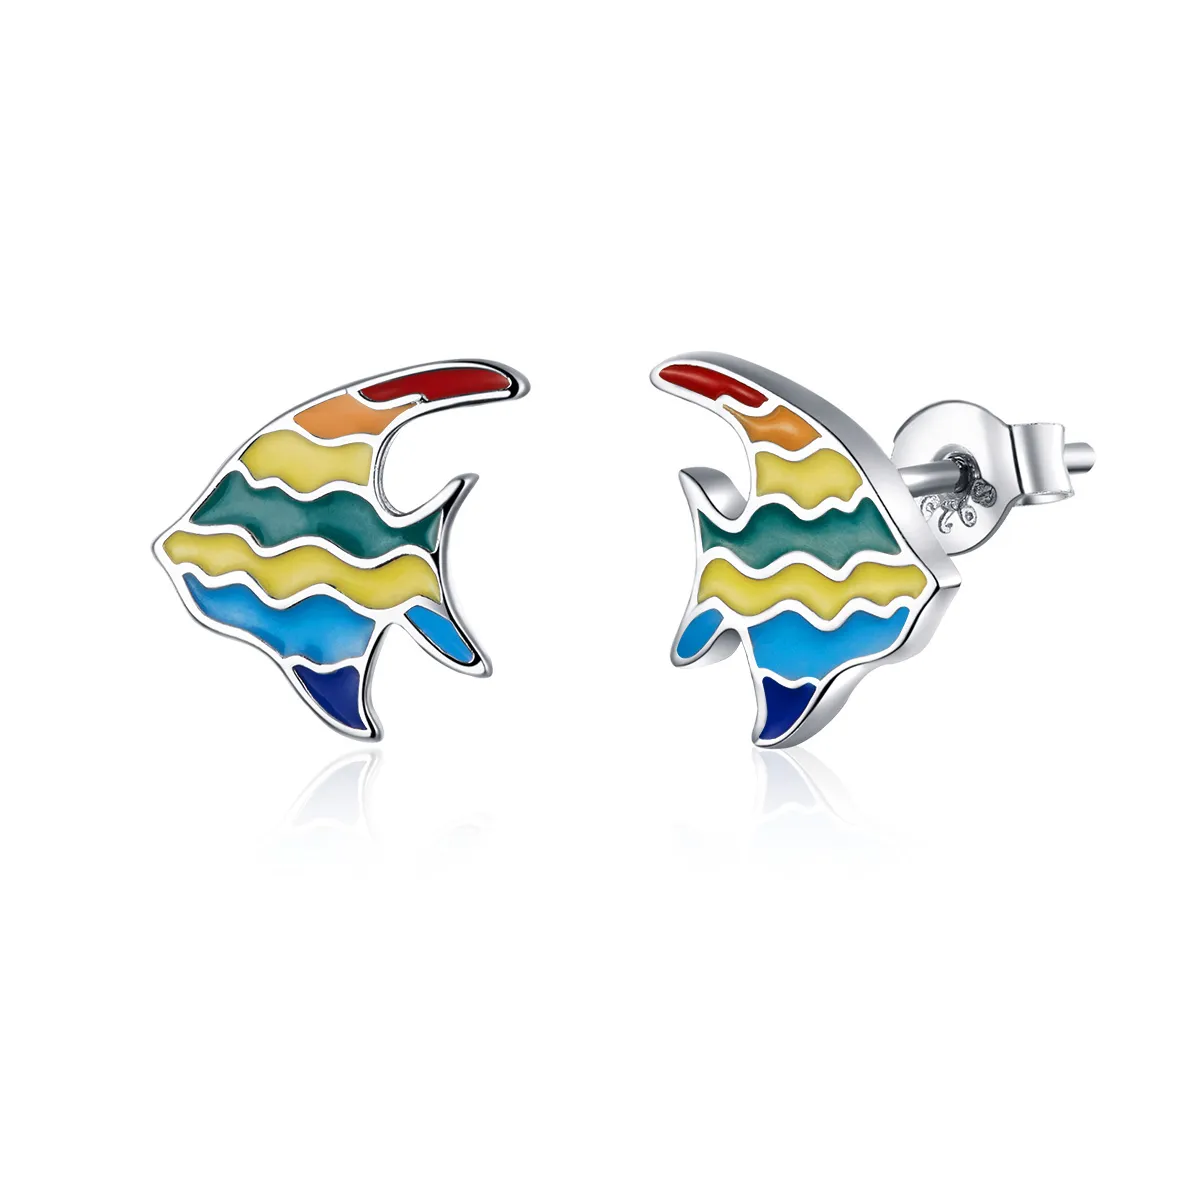 stud earrings în stilul pandora cu peștișor în culorile curcubeului sce824